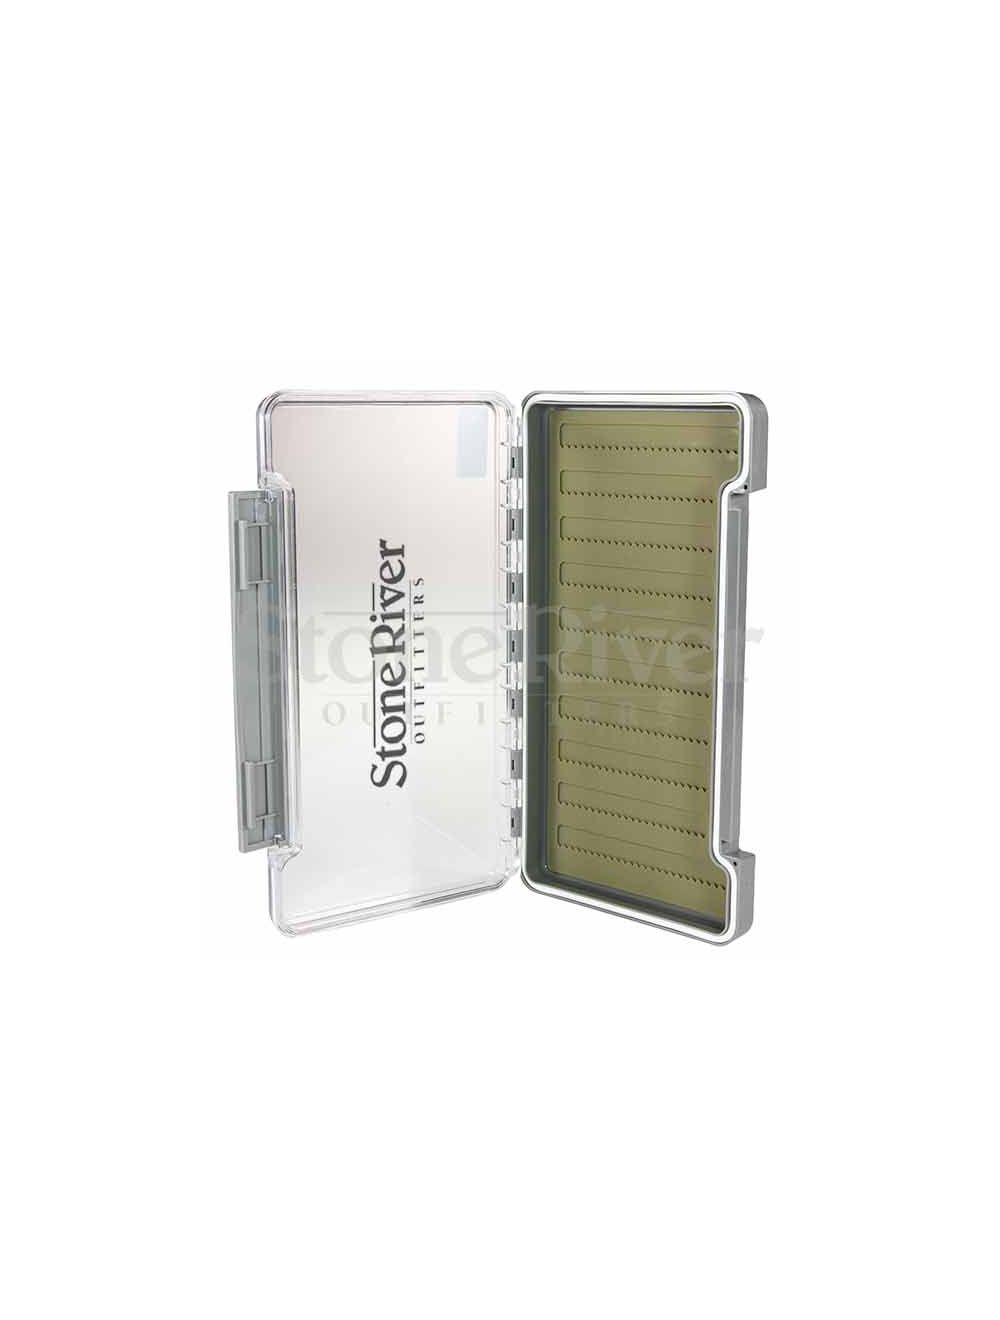 SRO FG-1364 Silicone XL Slim Waterproof Box